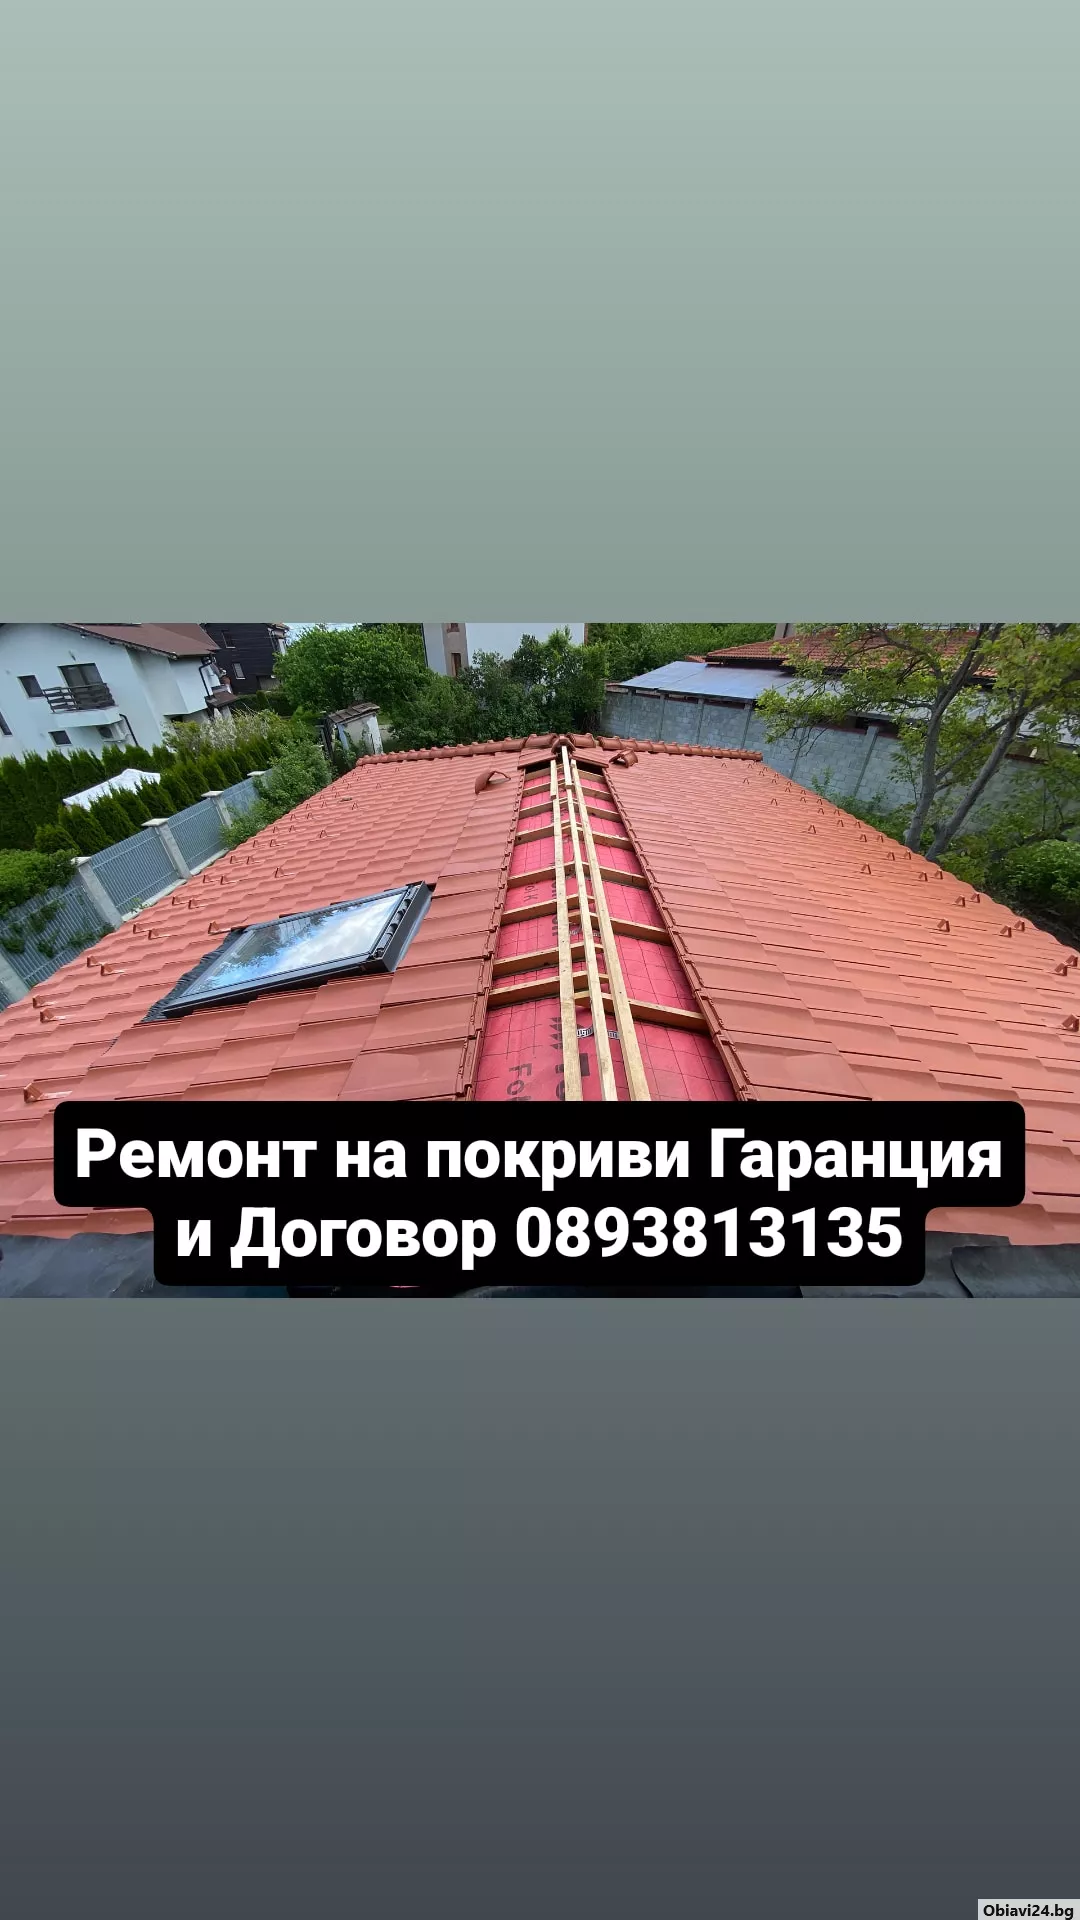 Ремонт и изграждане на покриви дървени навеси Гаранция за качество Бояджиски и Тенекеджиски услуги л - obiavi24.bg